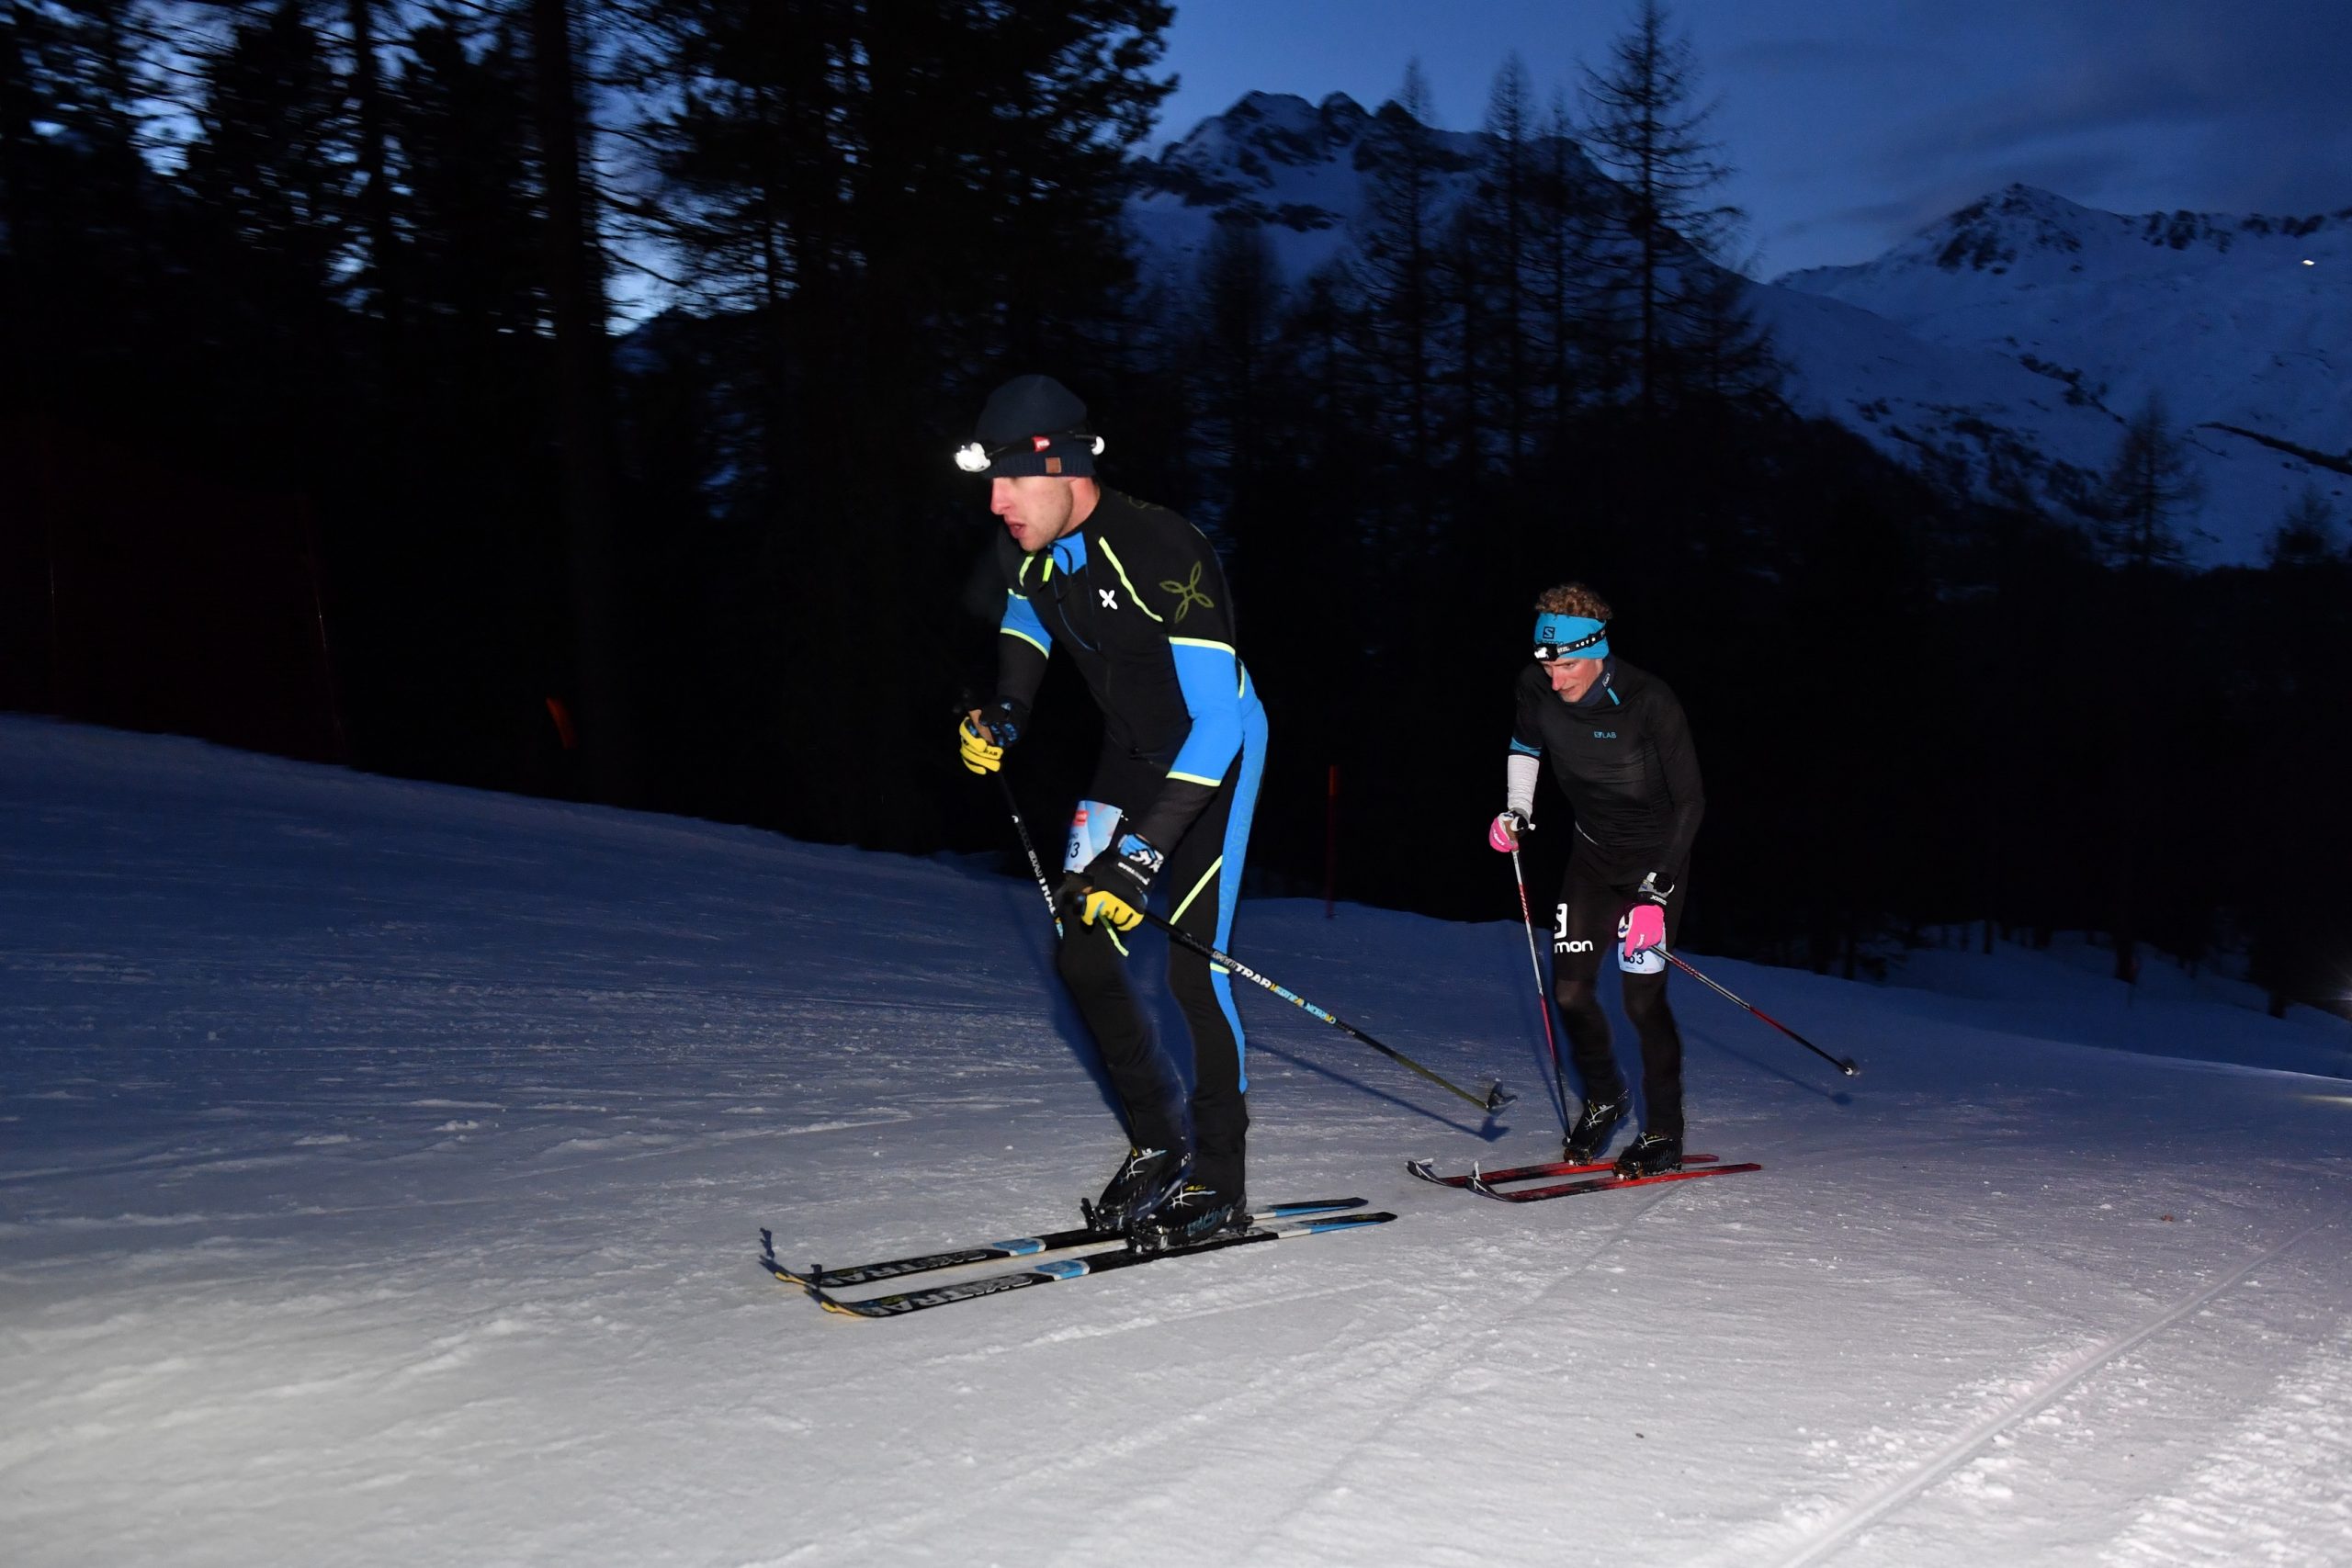 3-Summits - Corvatsch - 2020 Silvaplana
Skitourenwettkampf mit Hhenunterschied: 890 hm, Distanz: 4.5 km
https://www.3-summits.ch